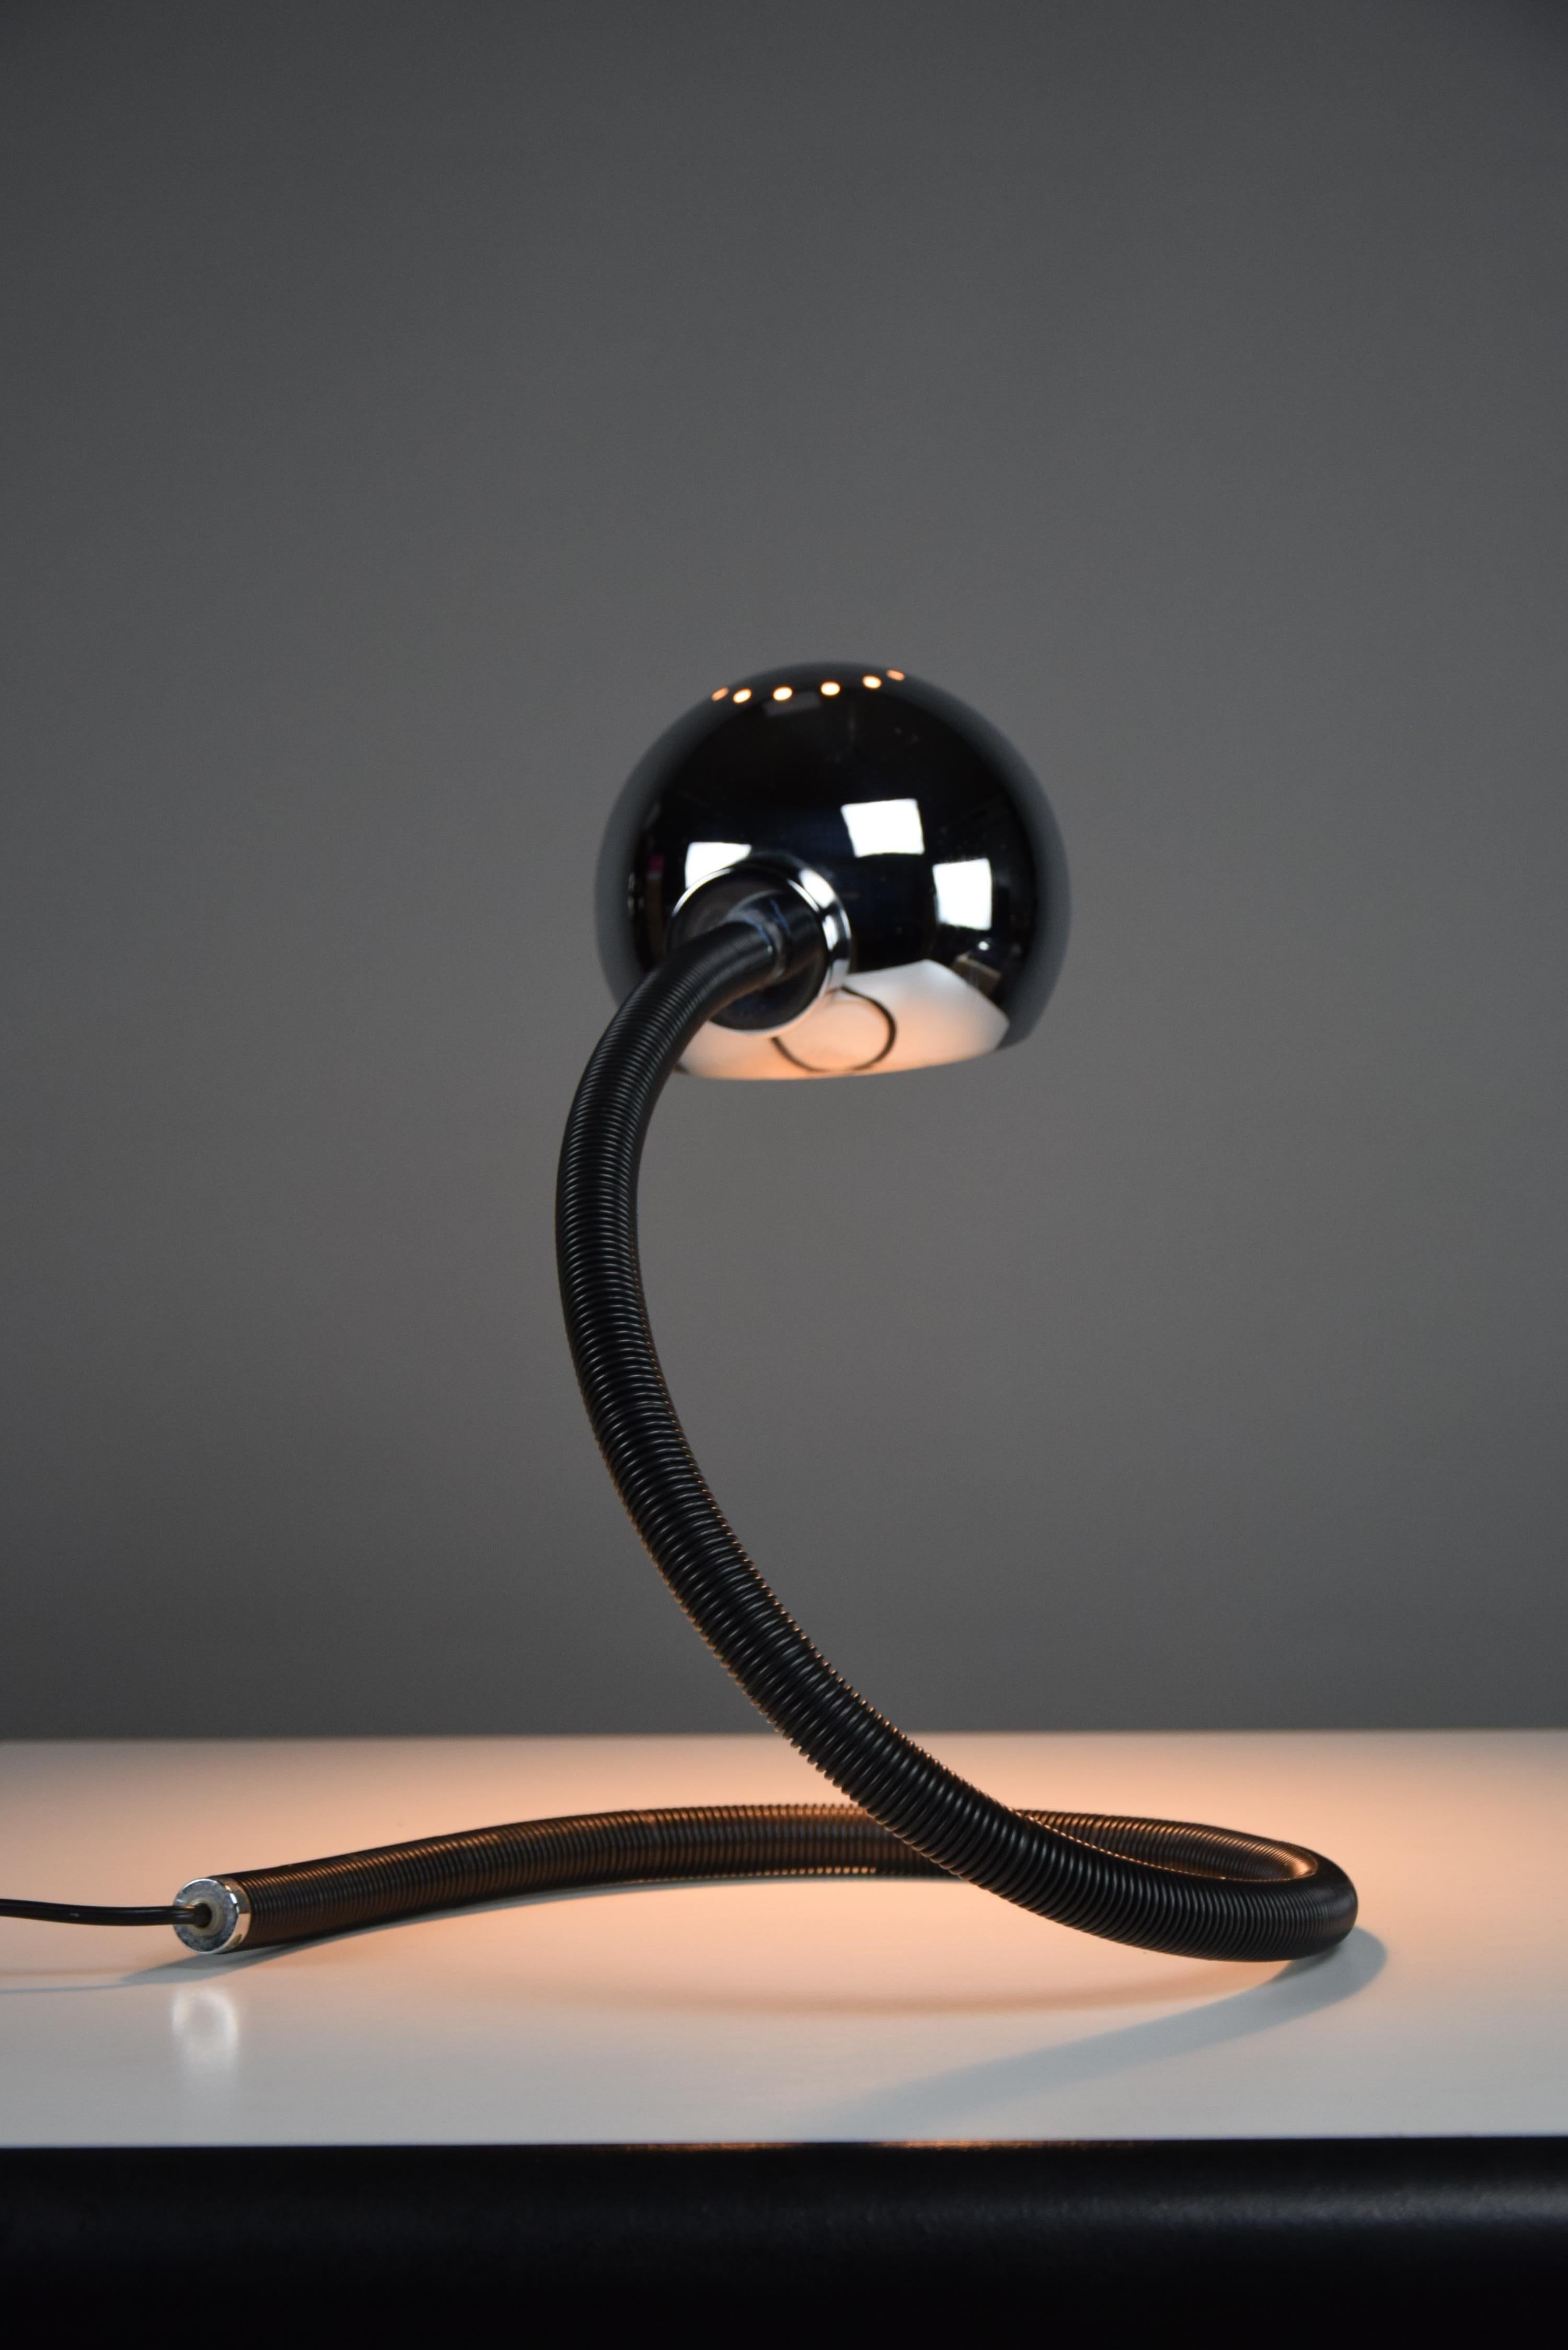 Voici l'élégance intemporelle de la lampe de table Hebi, un chef-d'œuvre de design réalisé par Isao Hosoe pour Valenti Luce dans les années 1970. Avec son emblématique grand cadre noir réglable et flexible, la lampe Hebi allie sans effort forme et